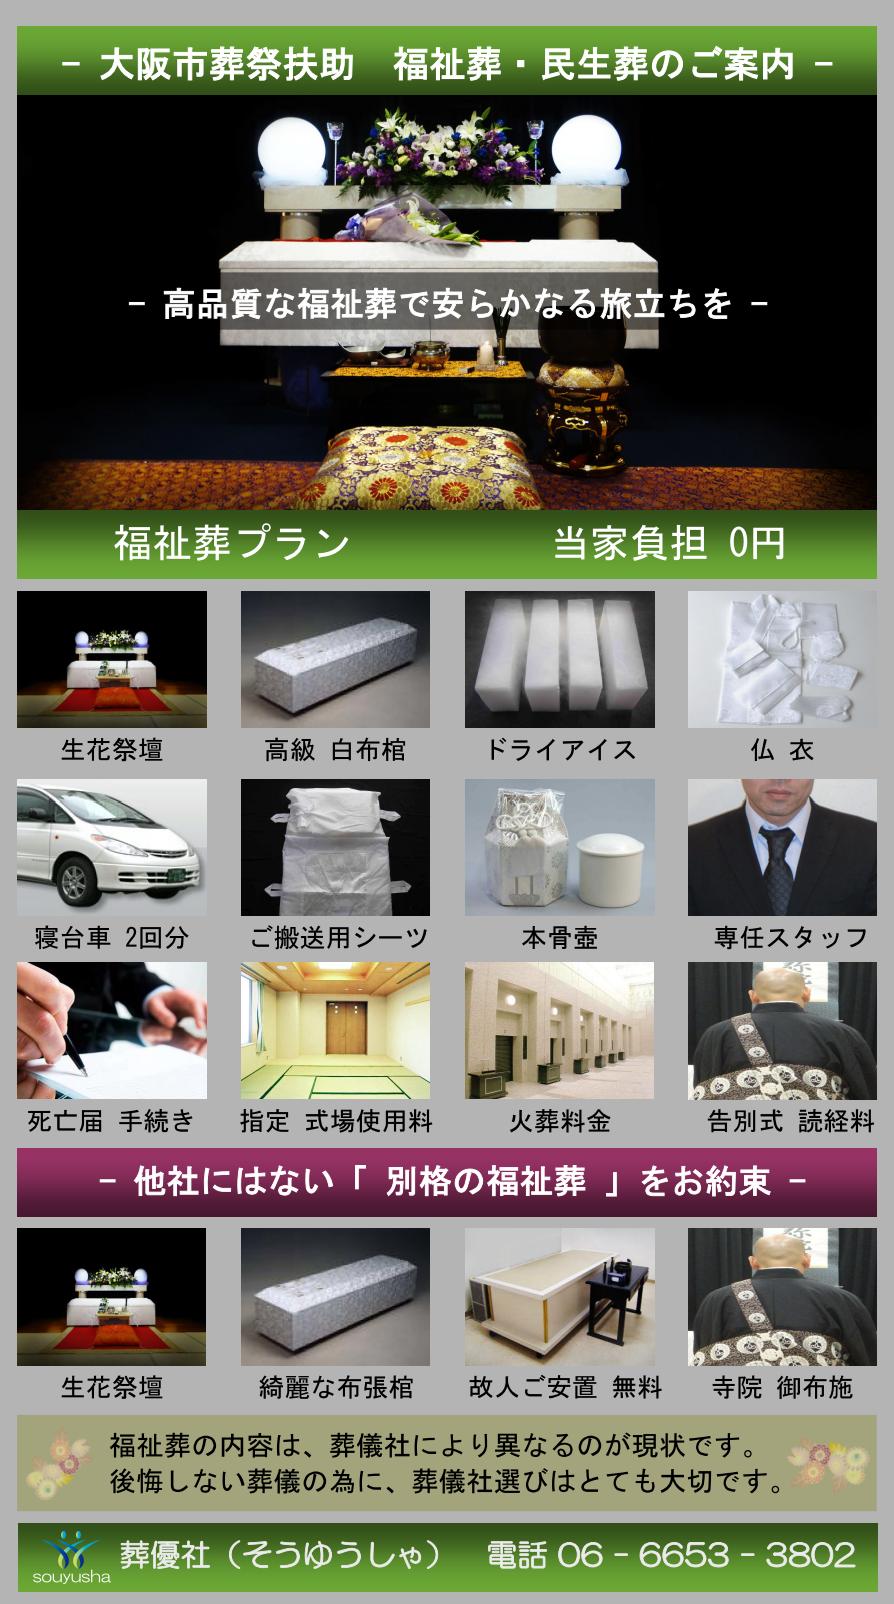 大阪市 西区での福祉葬、生活保護者のお葬式のご案内